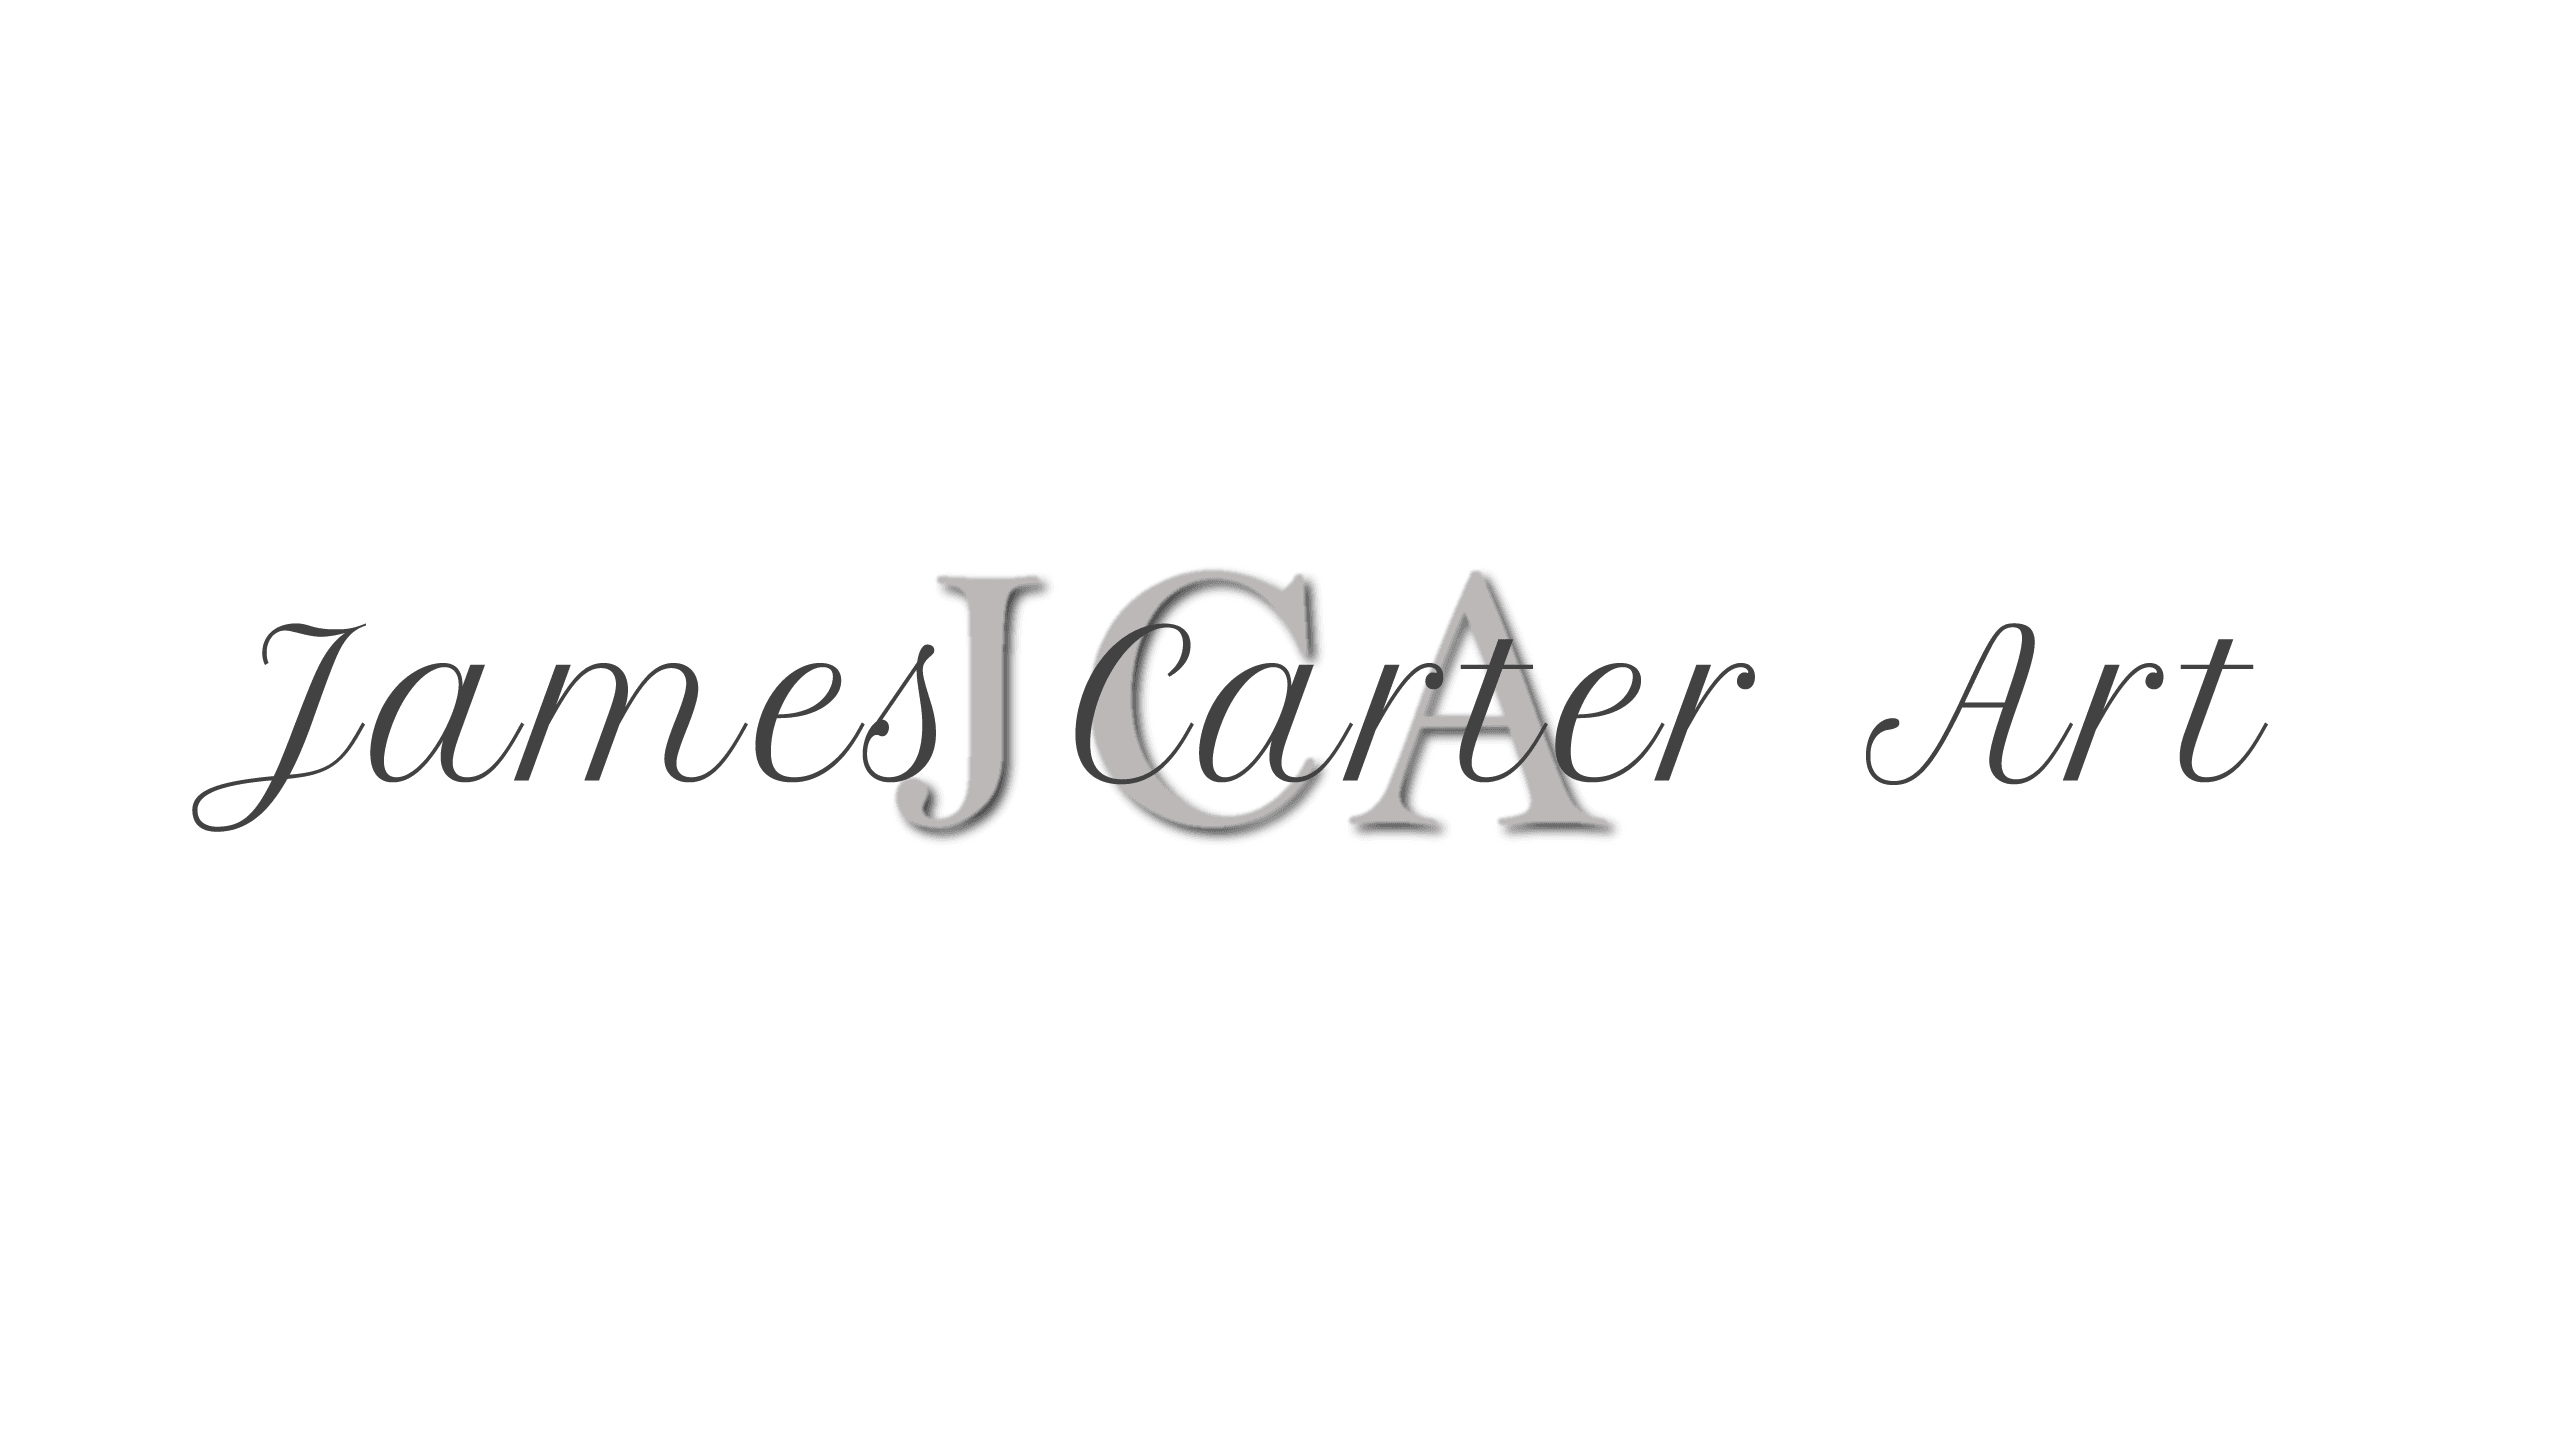 JamesCarter_Art バナー